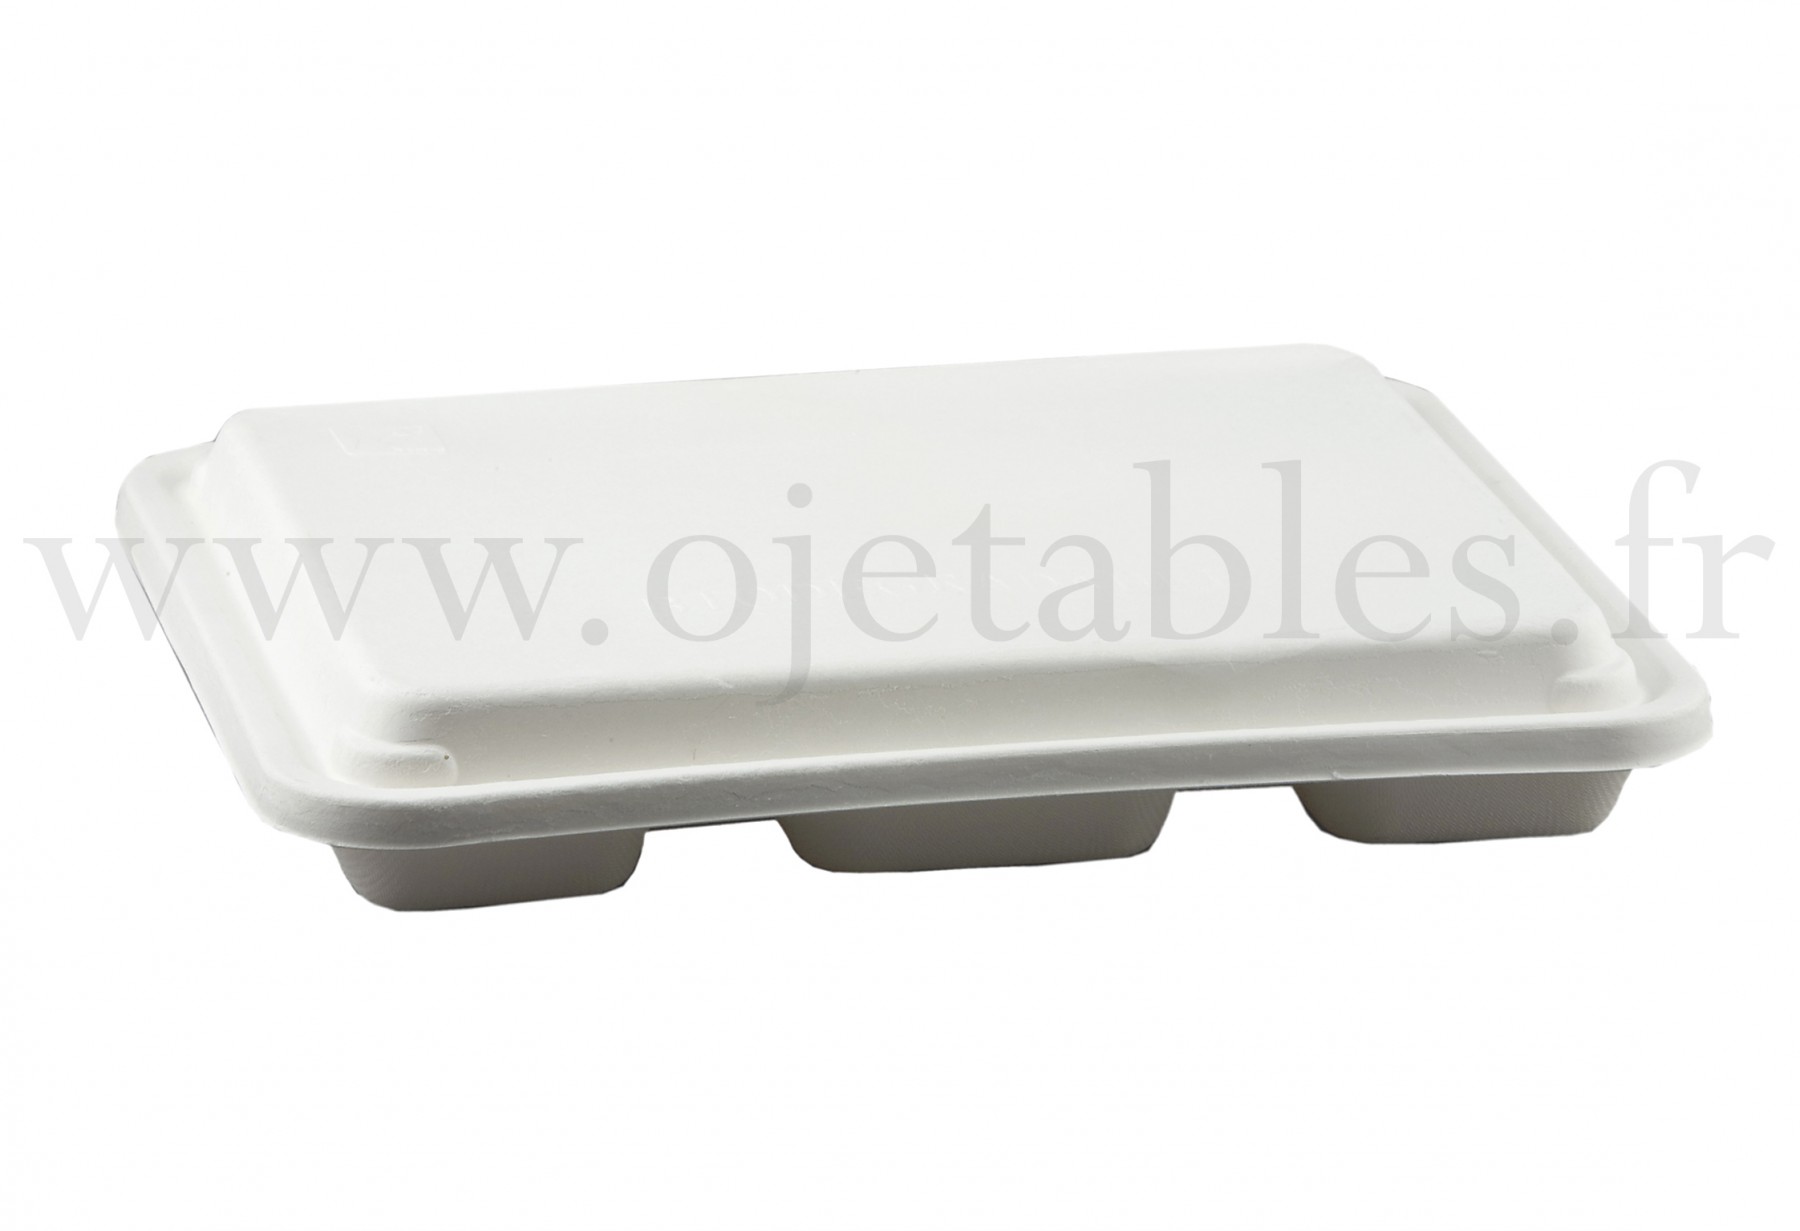 Fourchette jetable pliante en plastique, vaisselle jetable pour plateau  repas.